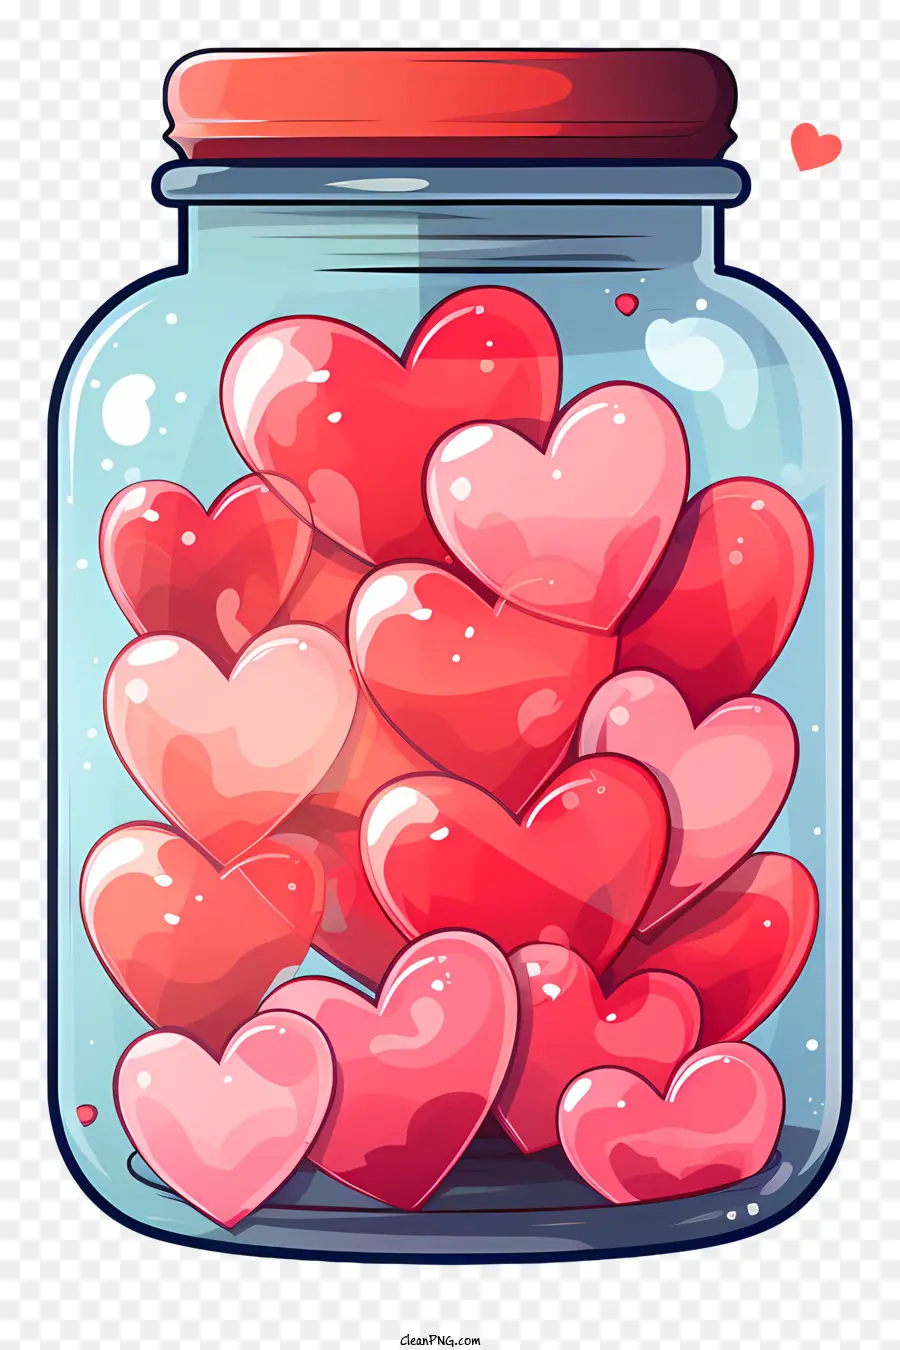 Mason Jar Jar of Hearts transparentes Glasglasherzen schwimmend schwimmende Herzen - Transparentes Glas mit schwebenden roten und rosa Herzen